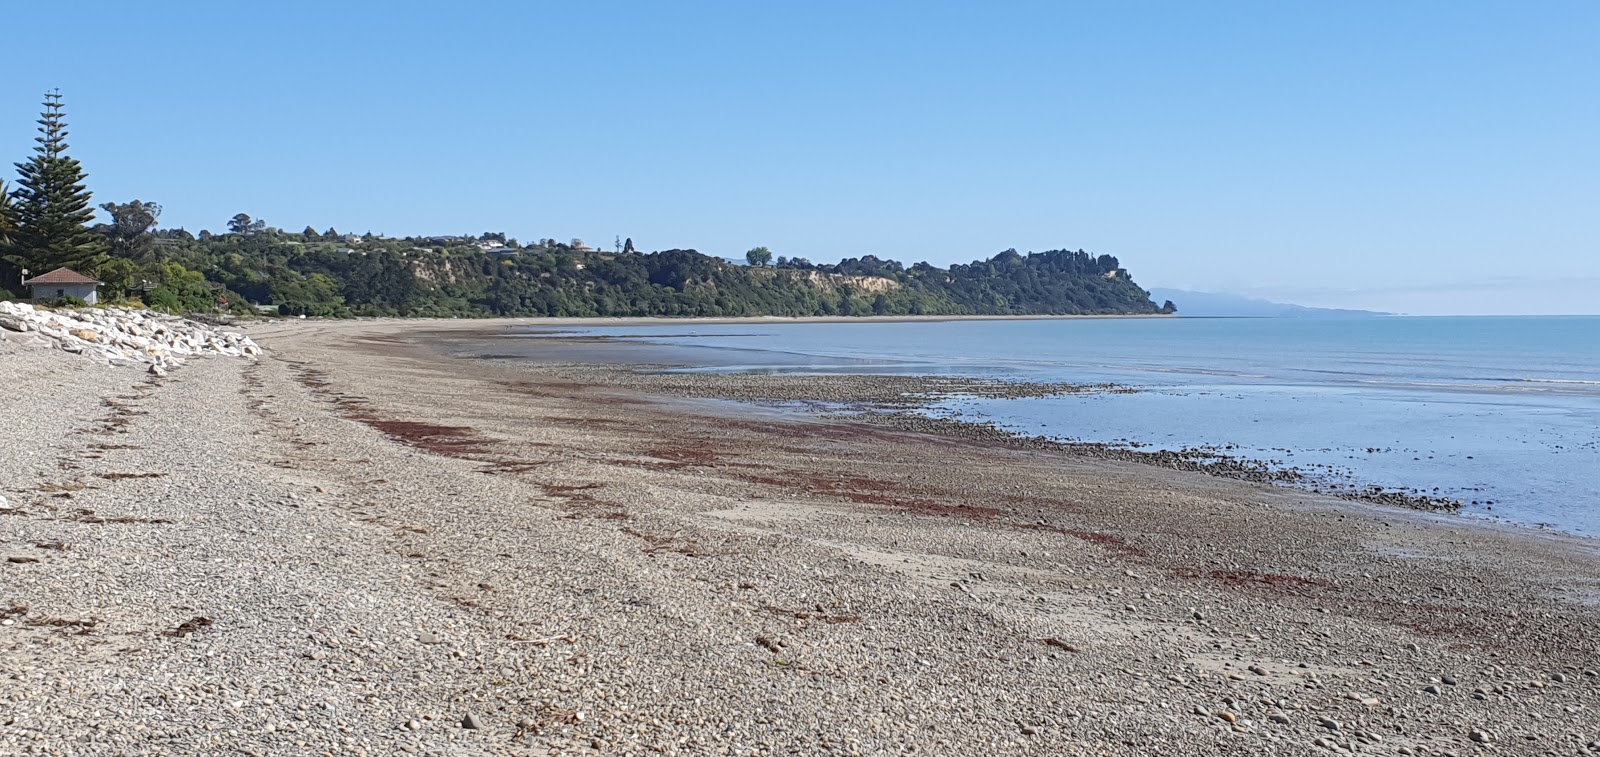 Foto de Ruby Bay Beach II com areia cinza e seixos superfície